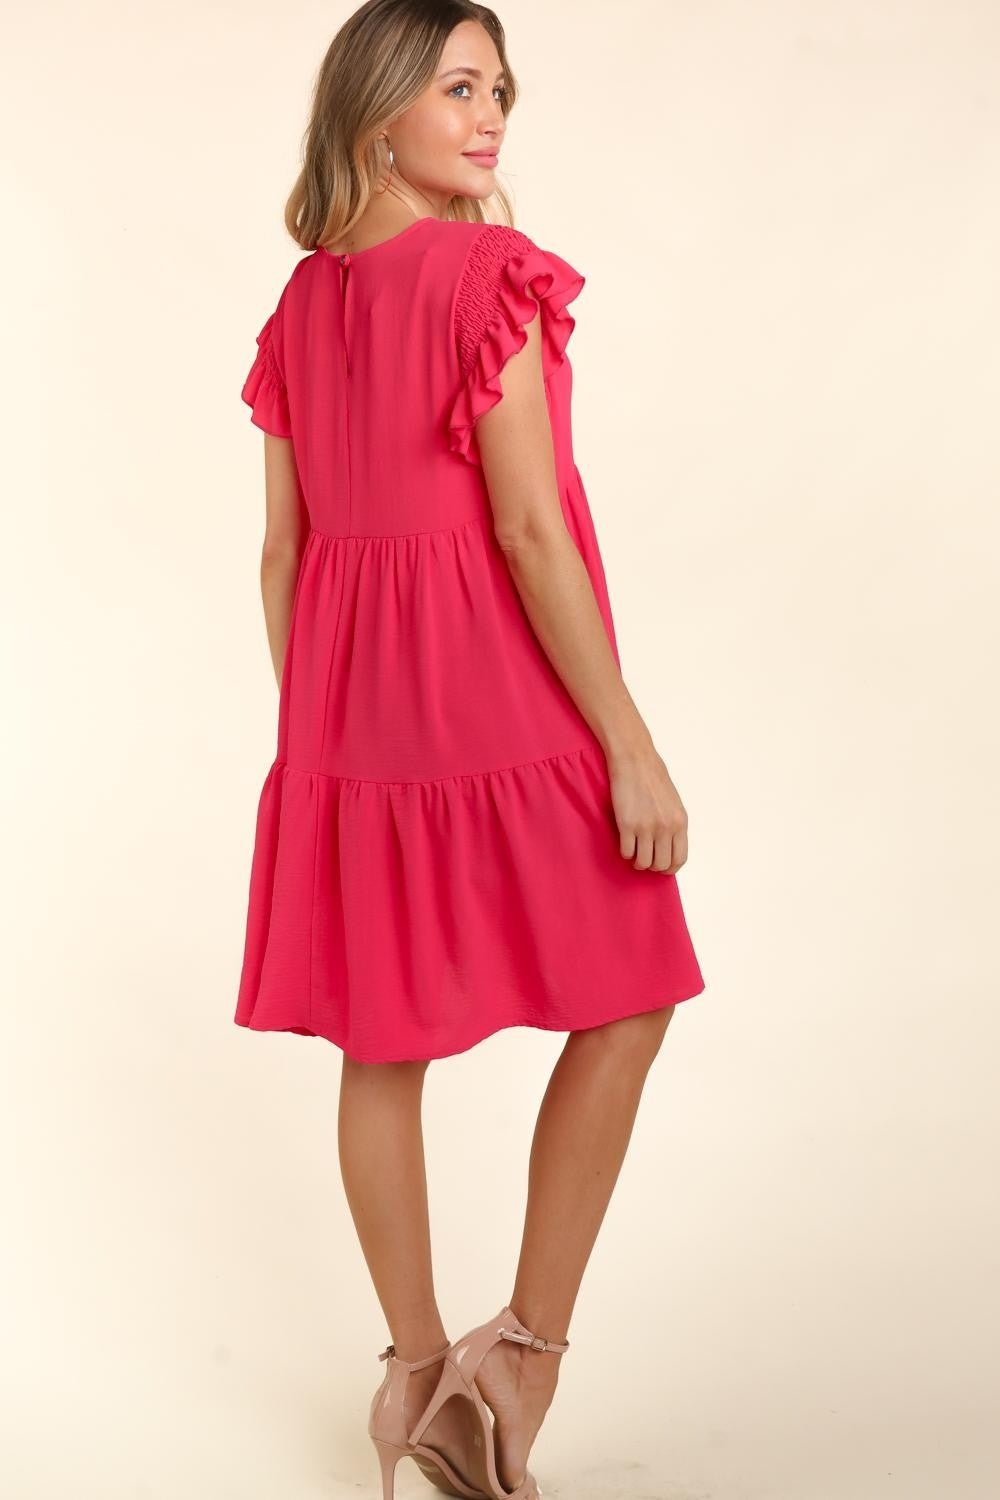 Short Ruffle Sleeve Mini Dress with Pockets in FuchsiaMini DressHaptics